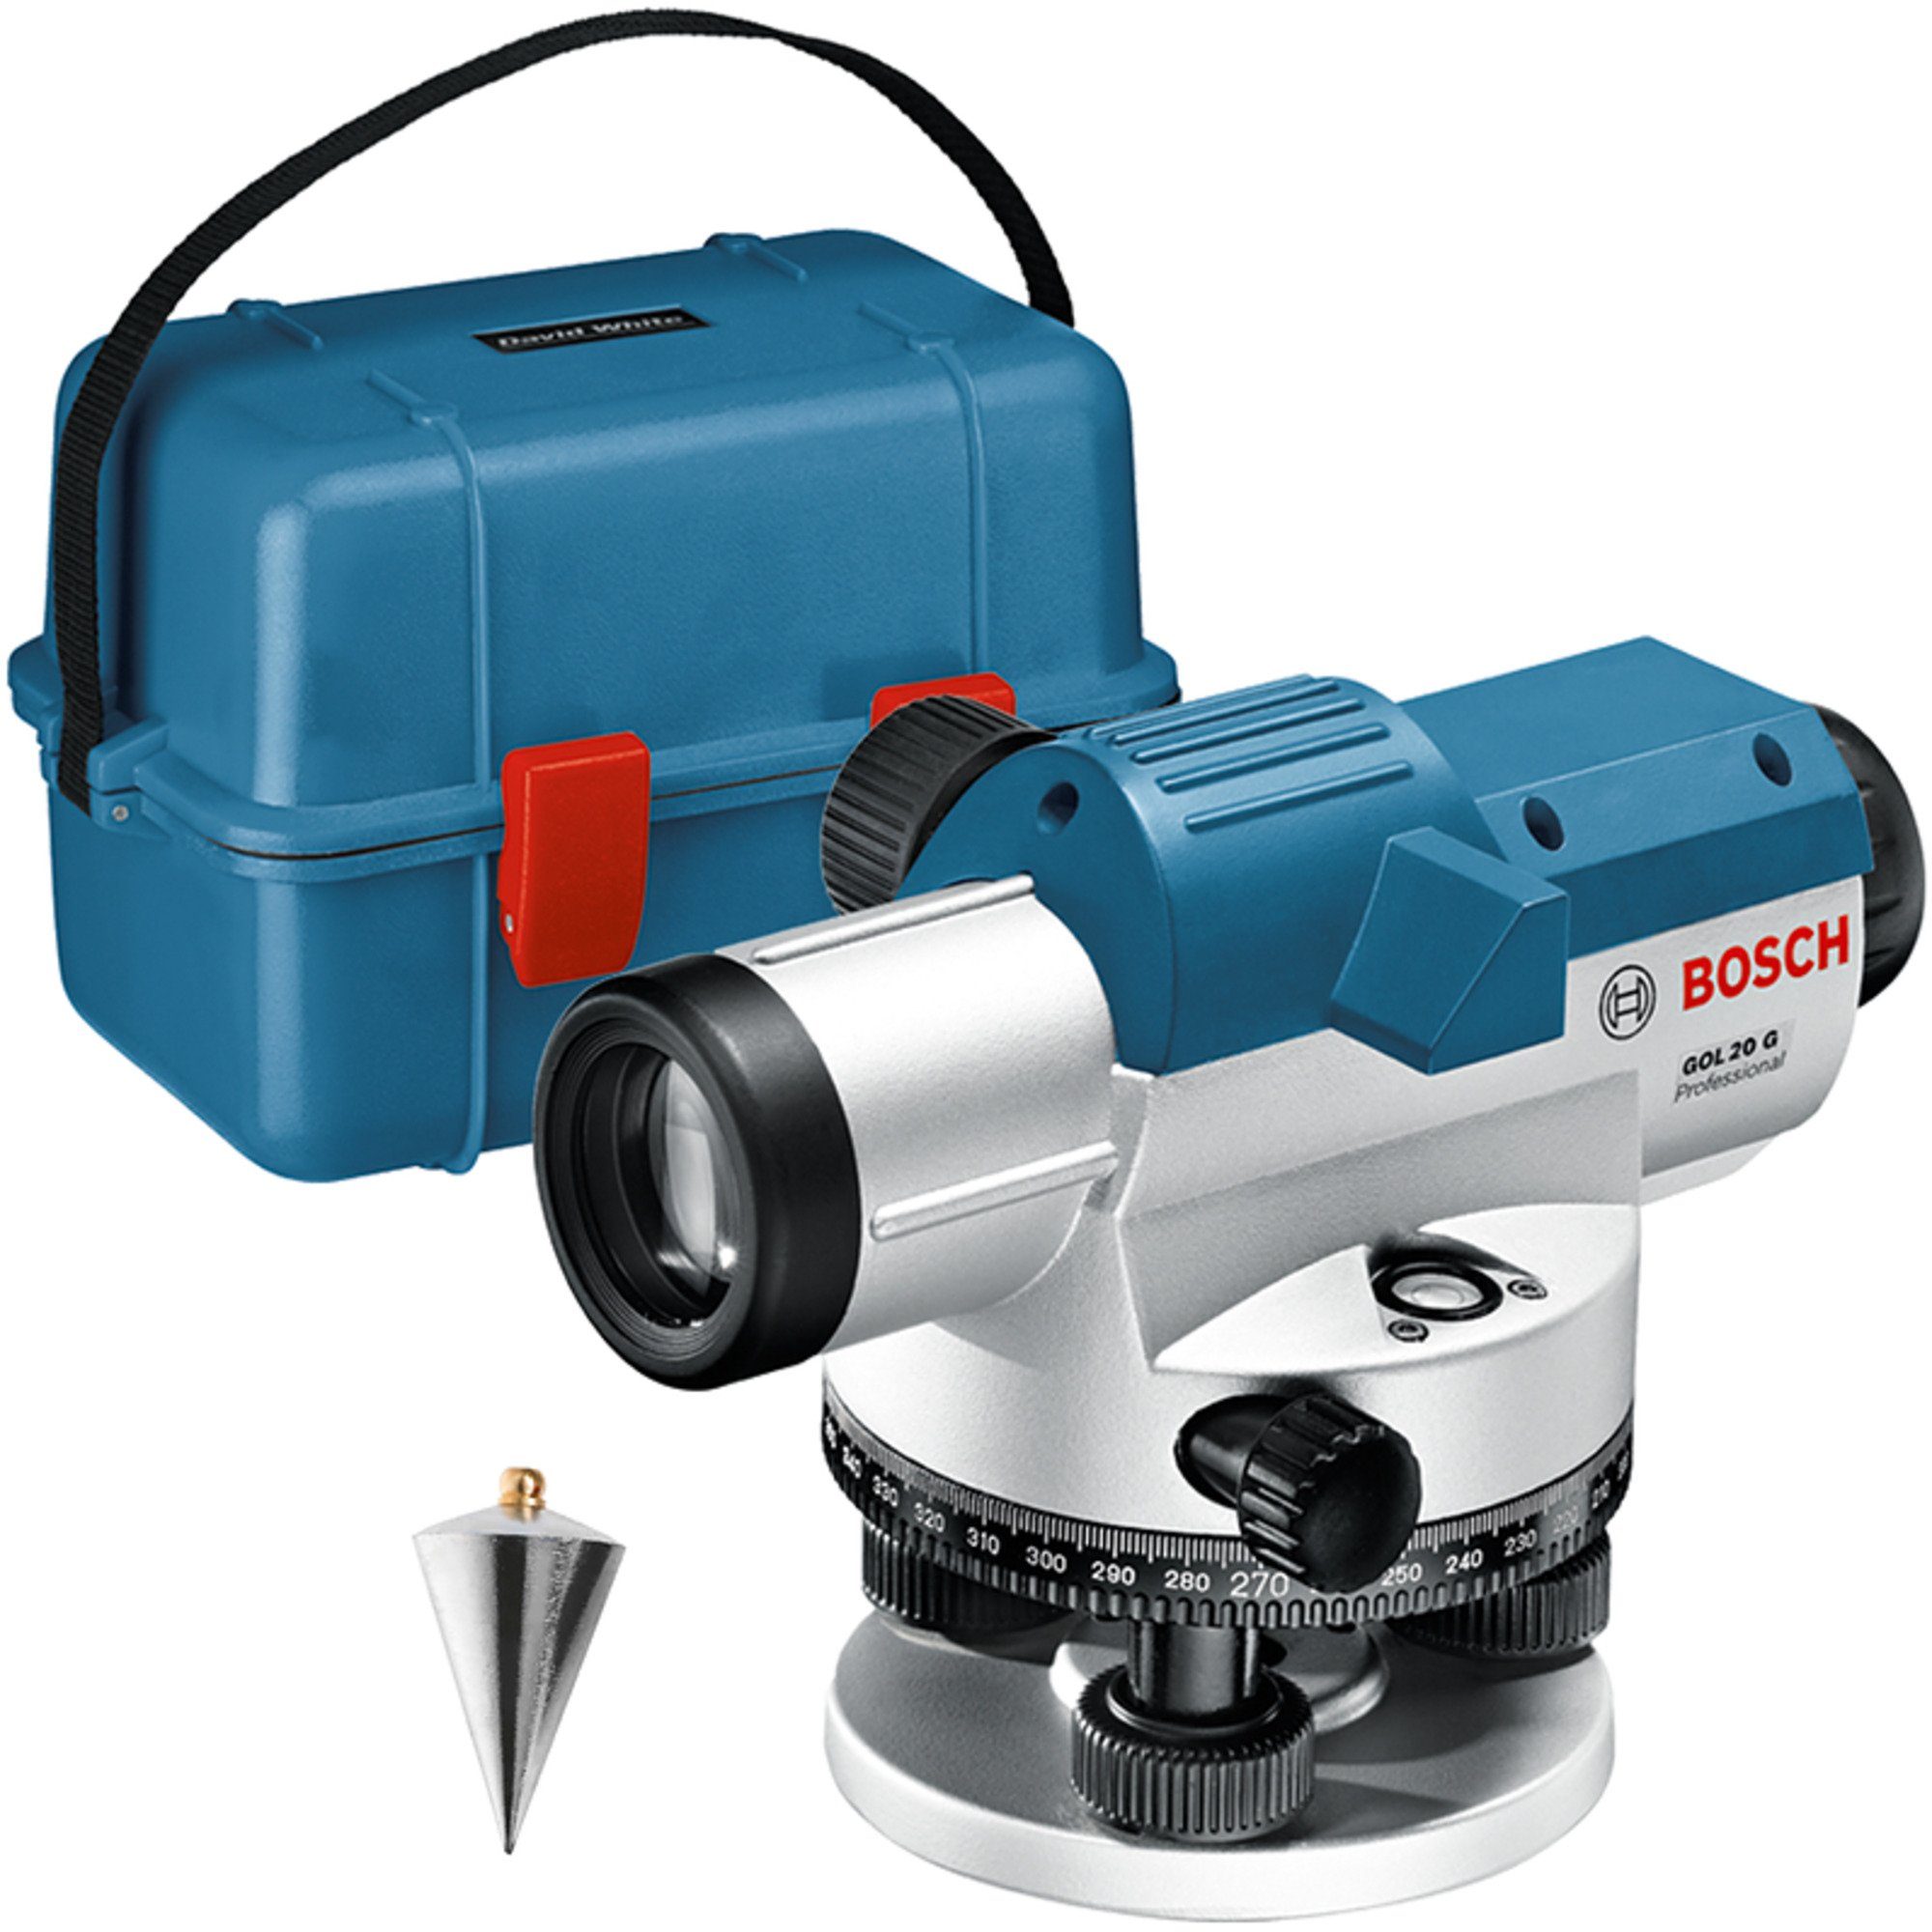 BOSCH Akku-Multifunktionswerkzeug Bosch Professional Optisches Nivelliergerät GOL 20